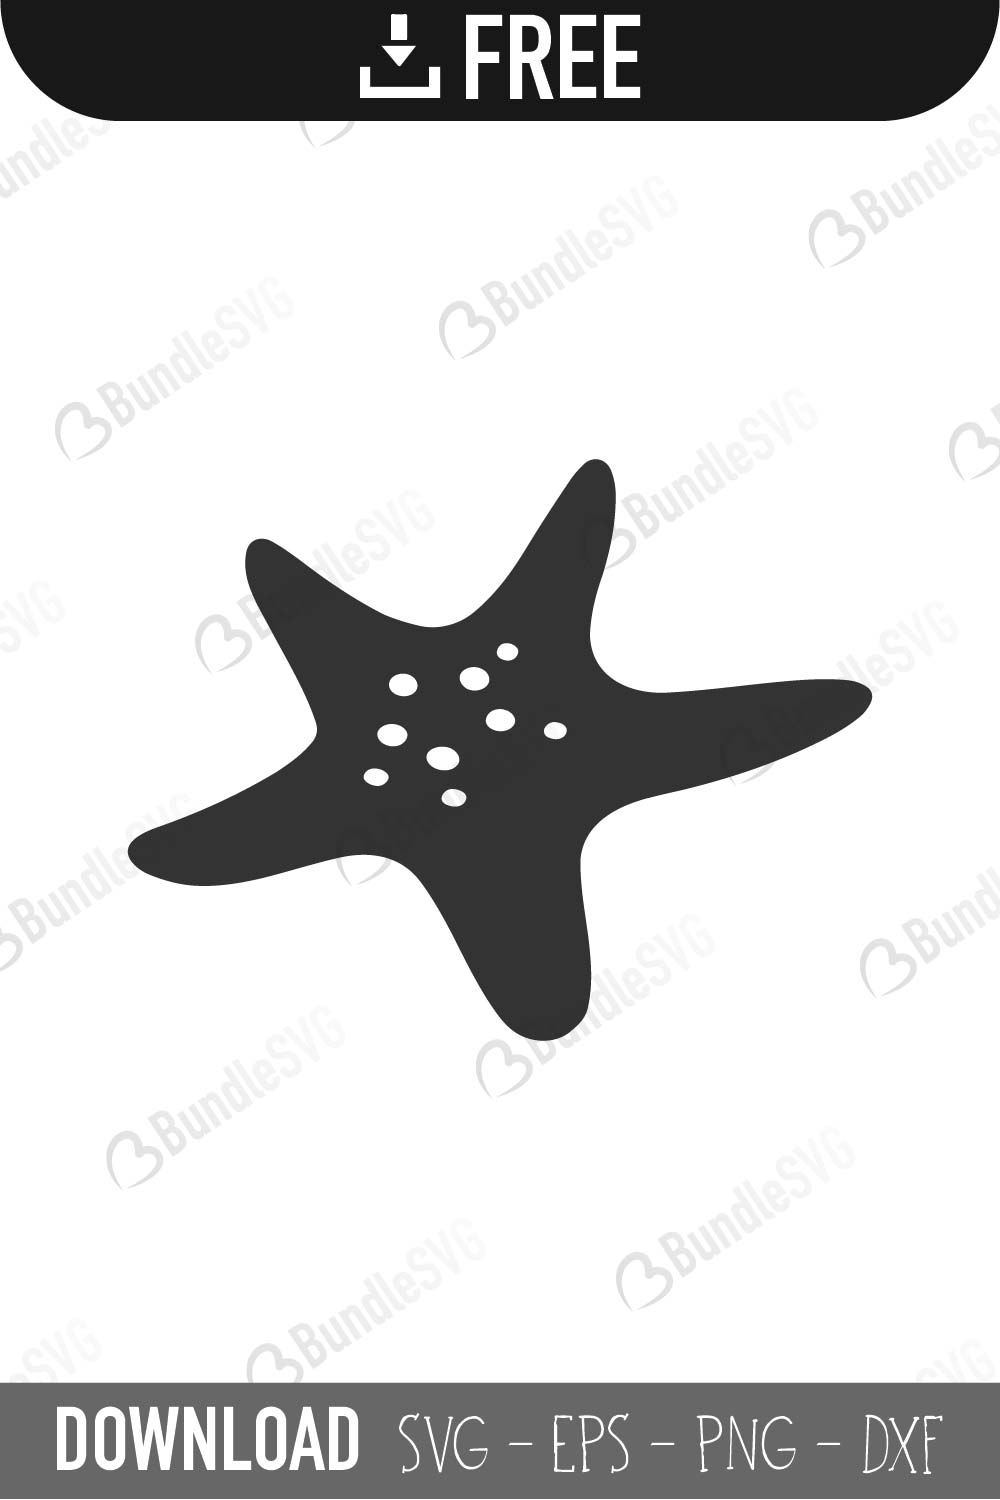 Starfish Svg Cut Files Free Download Bundlesvg